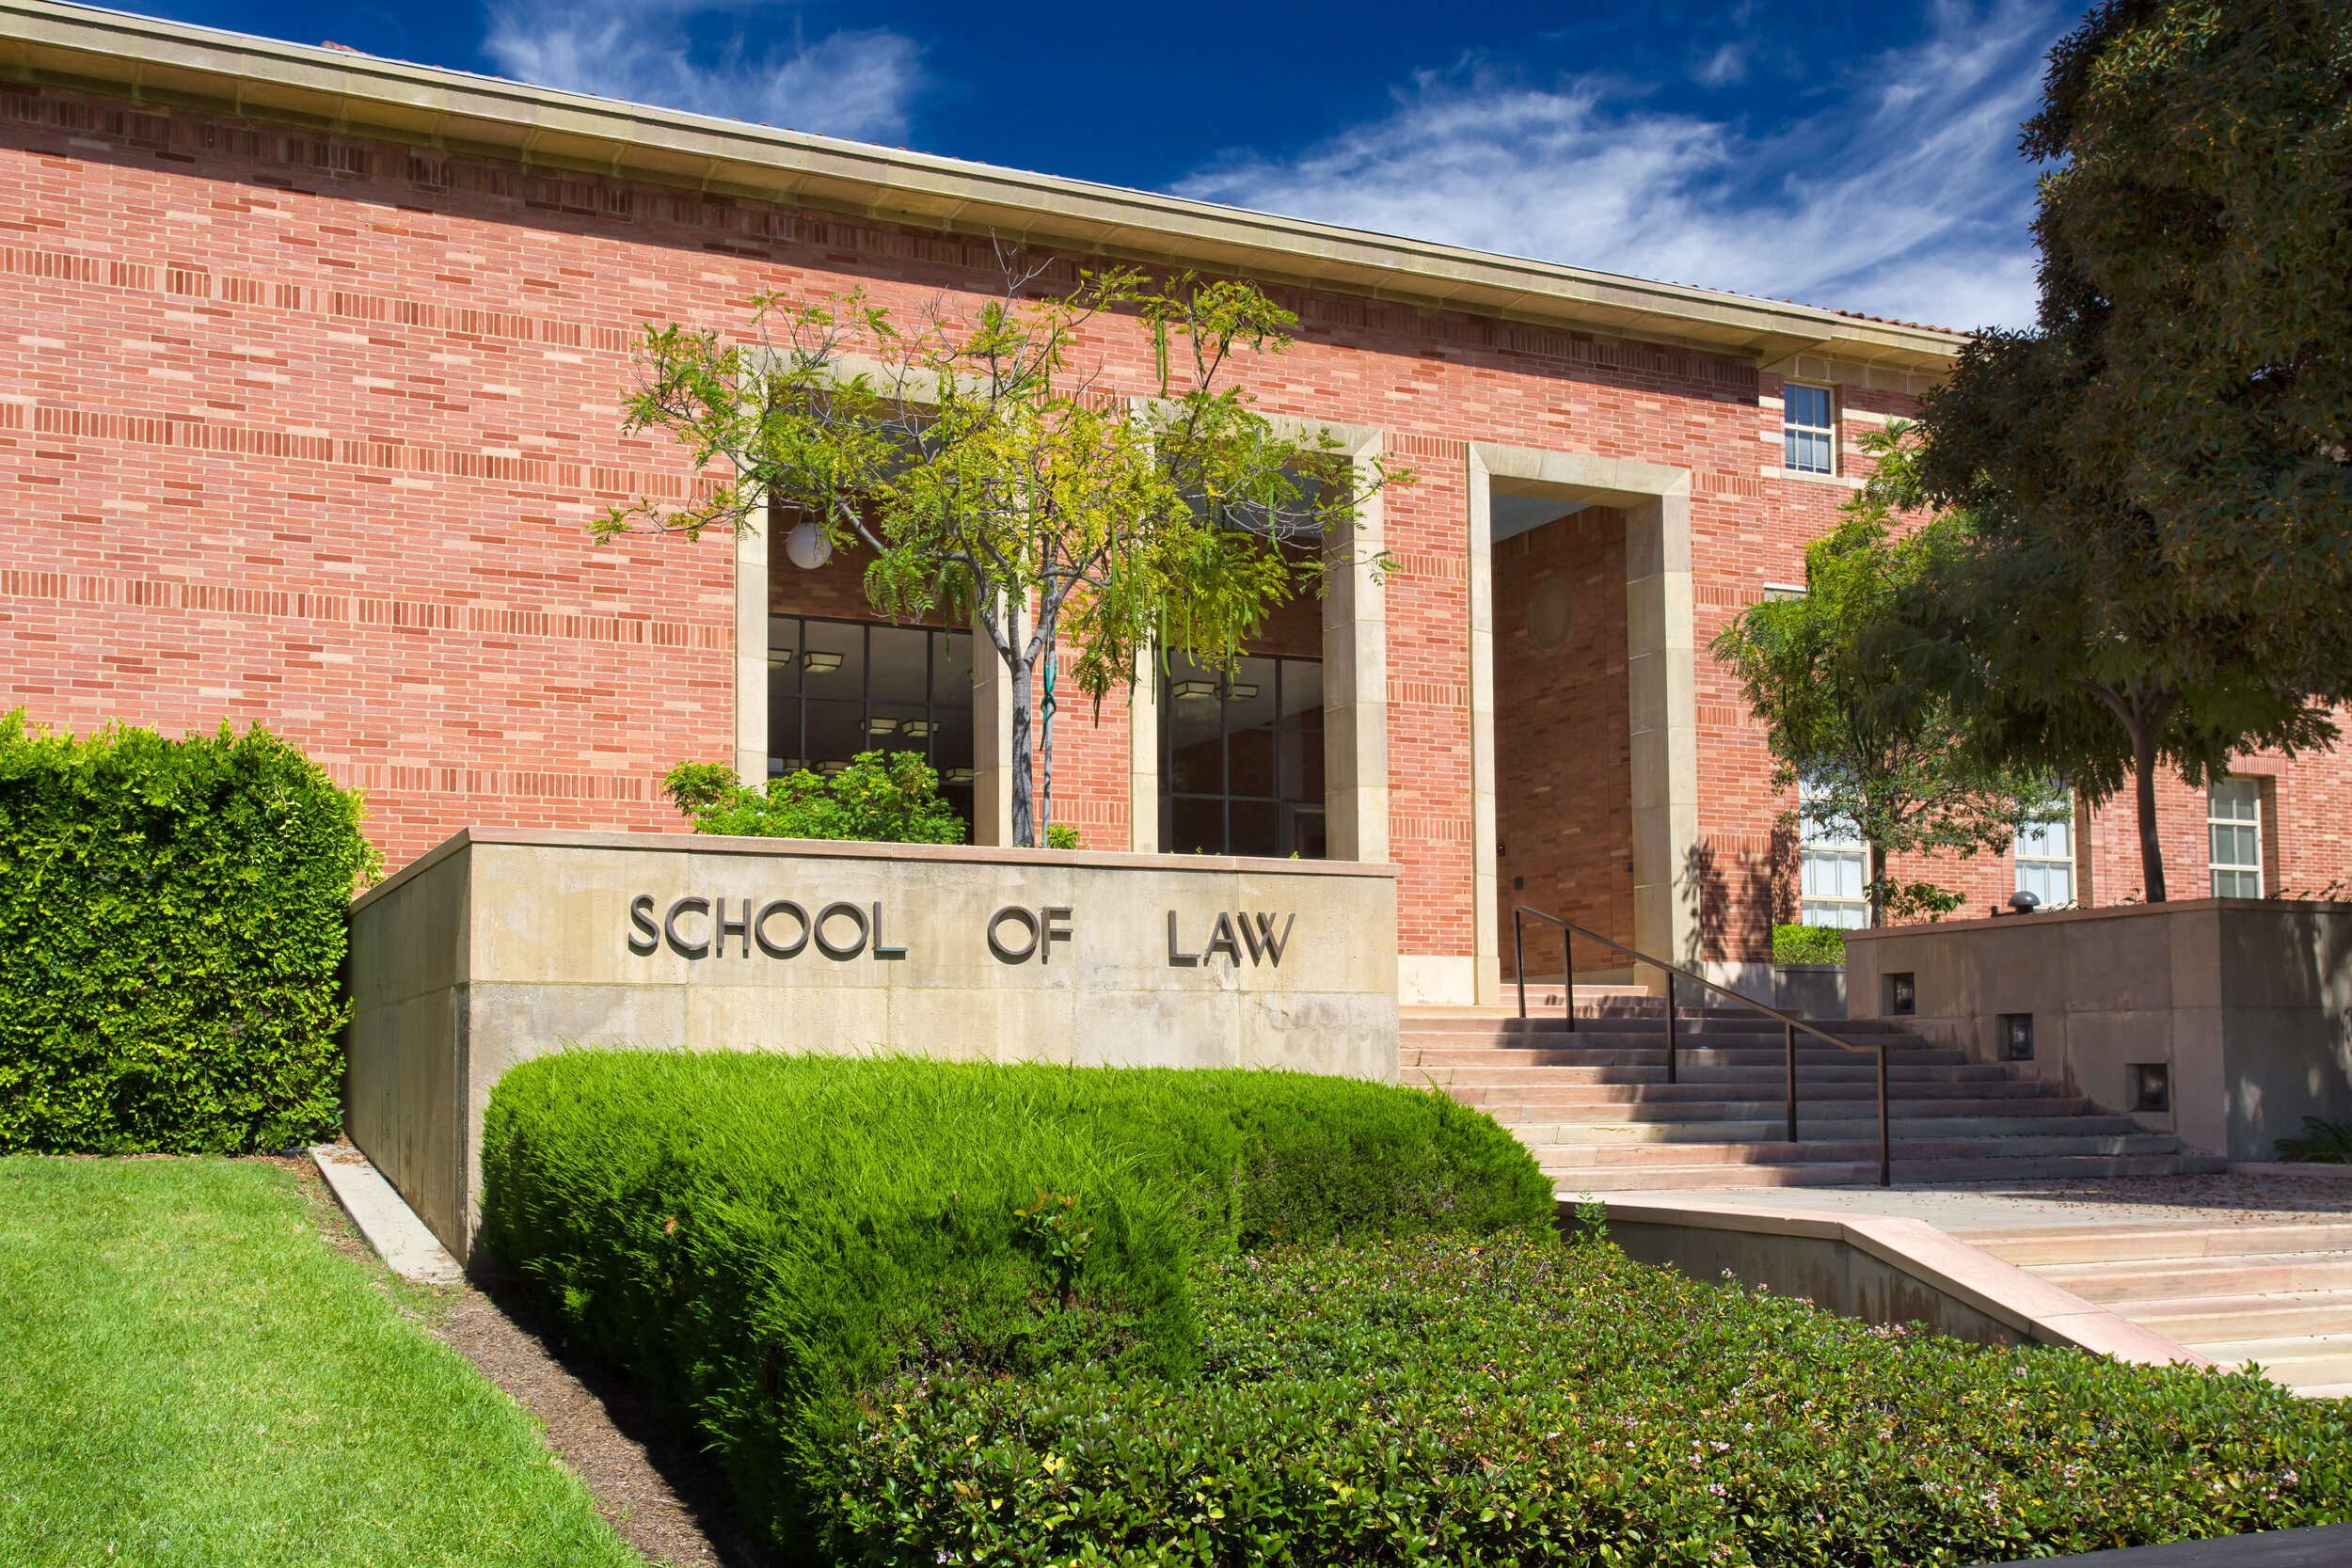 UCLA Law